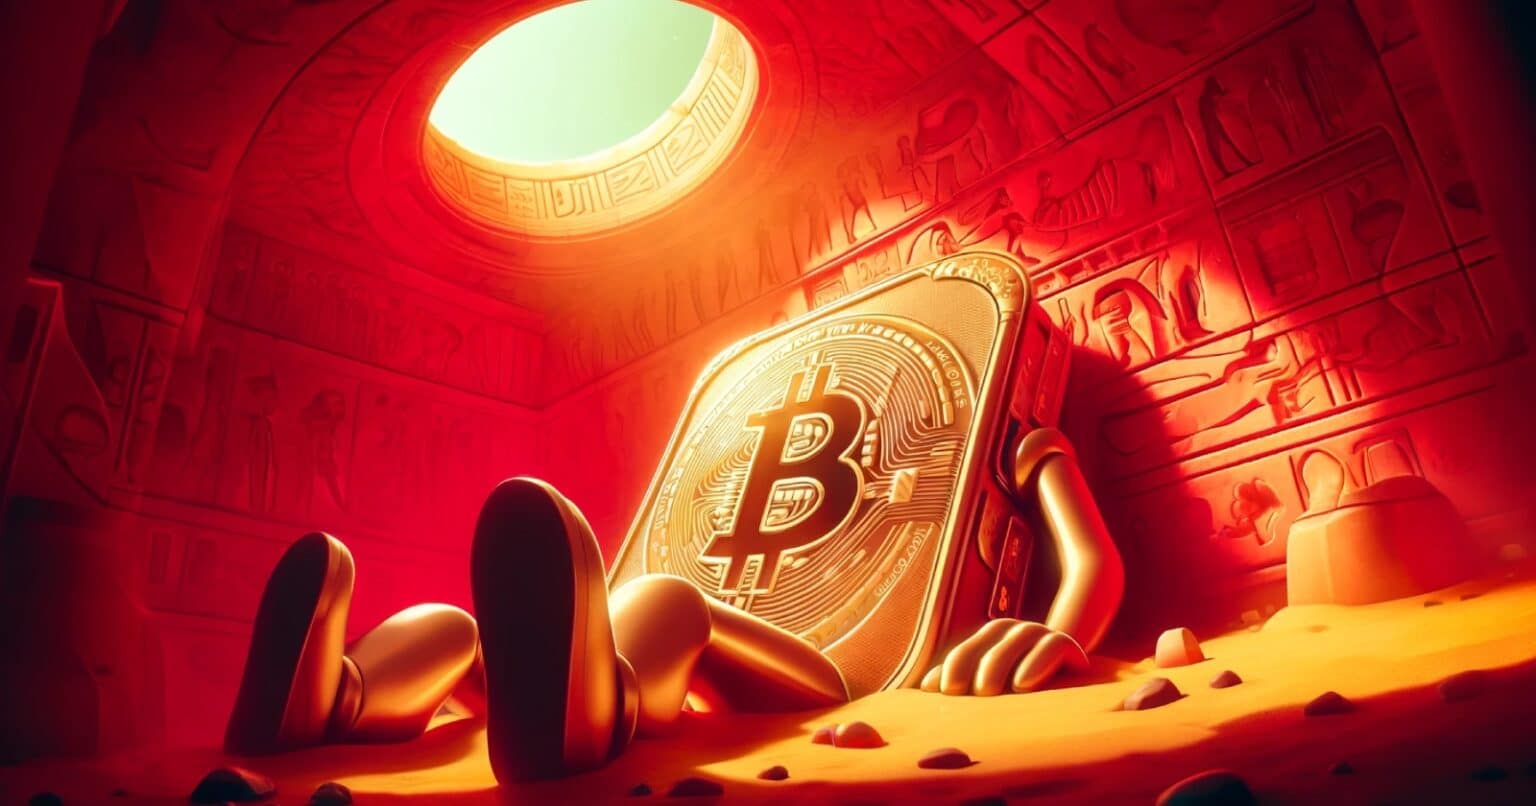 Carteira de Bitcoin desperta após 12 anos e movimenta 500 BTC